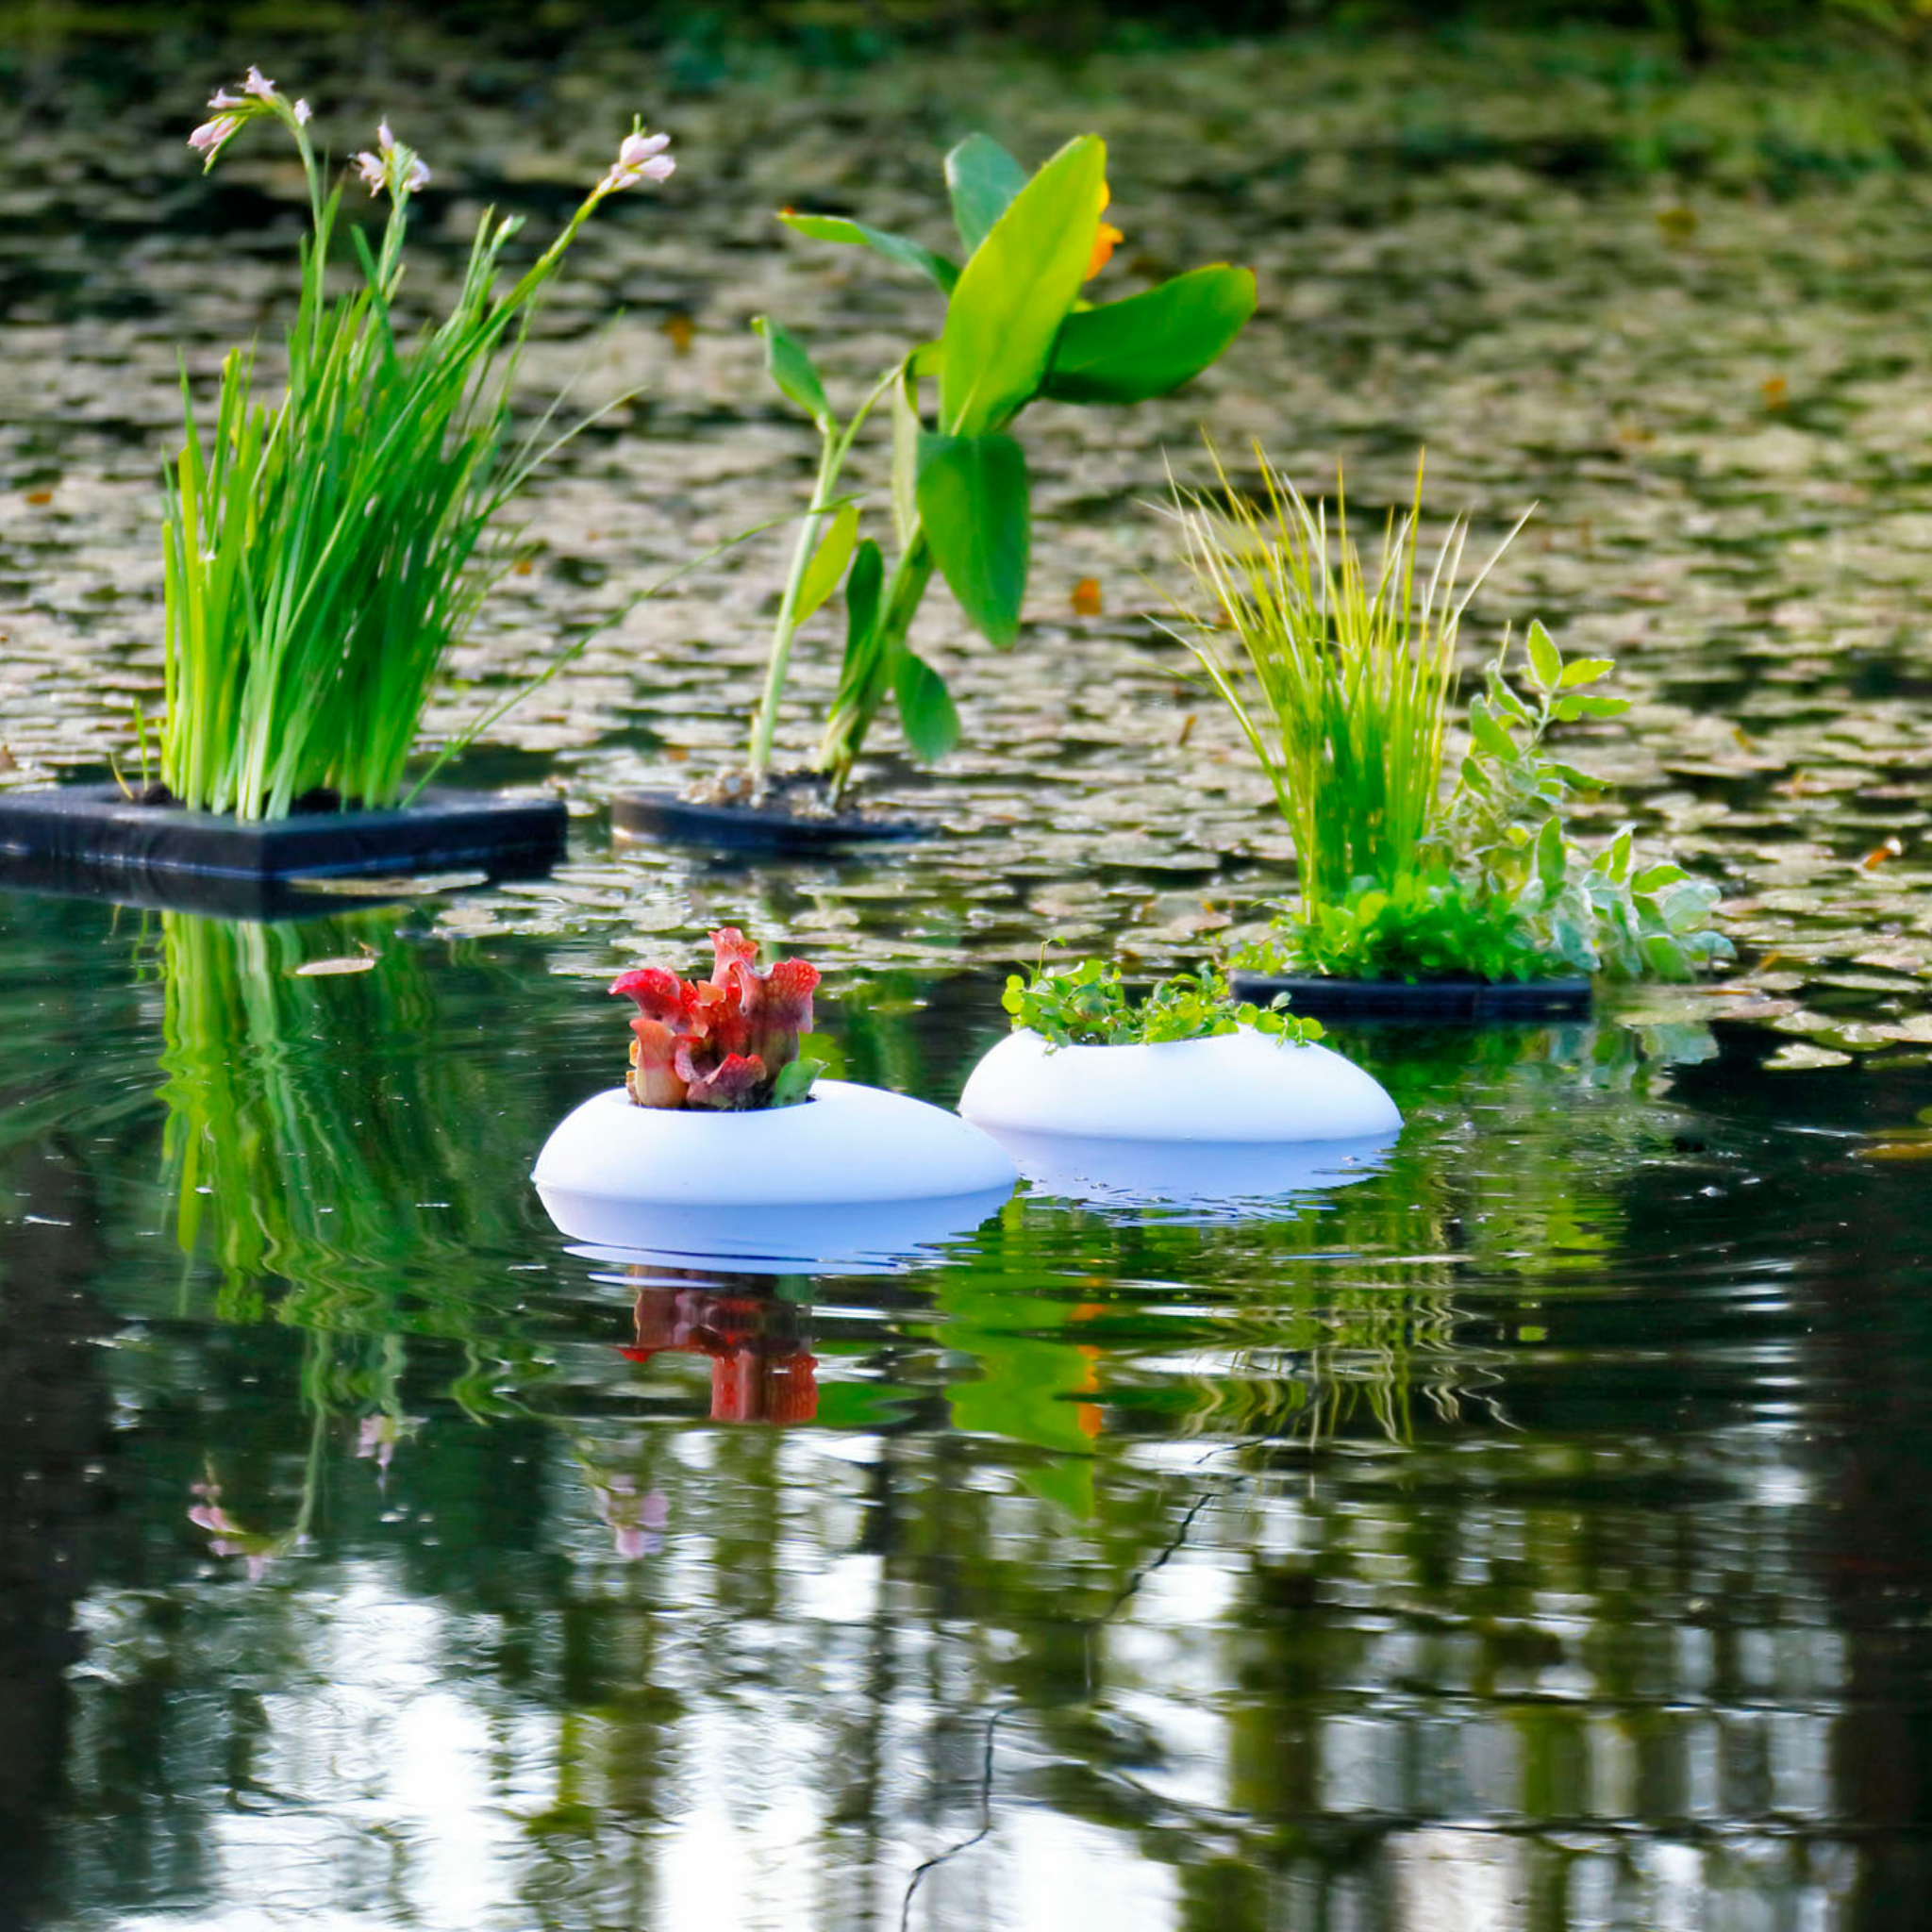 Floating Pond Light